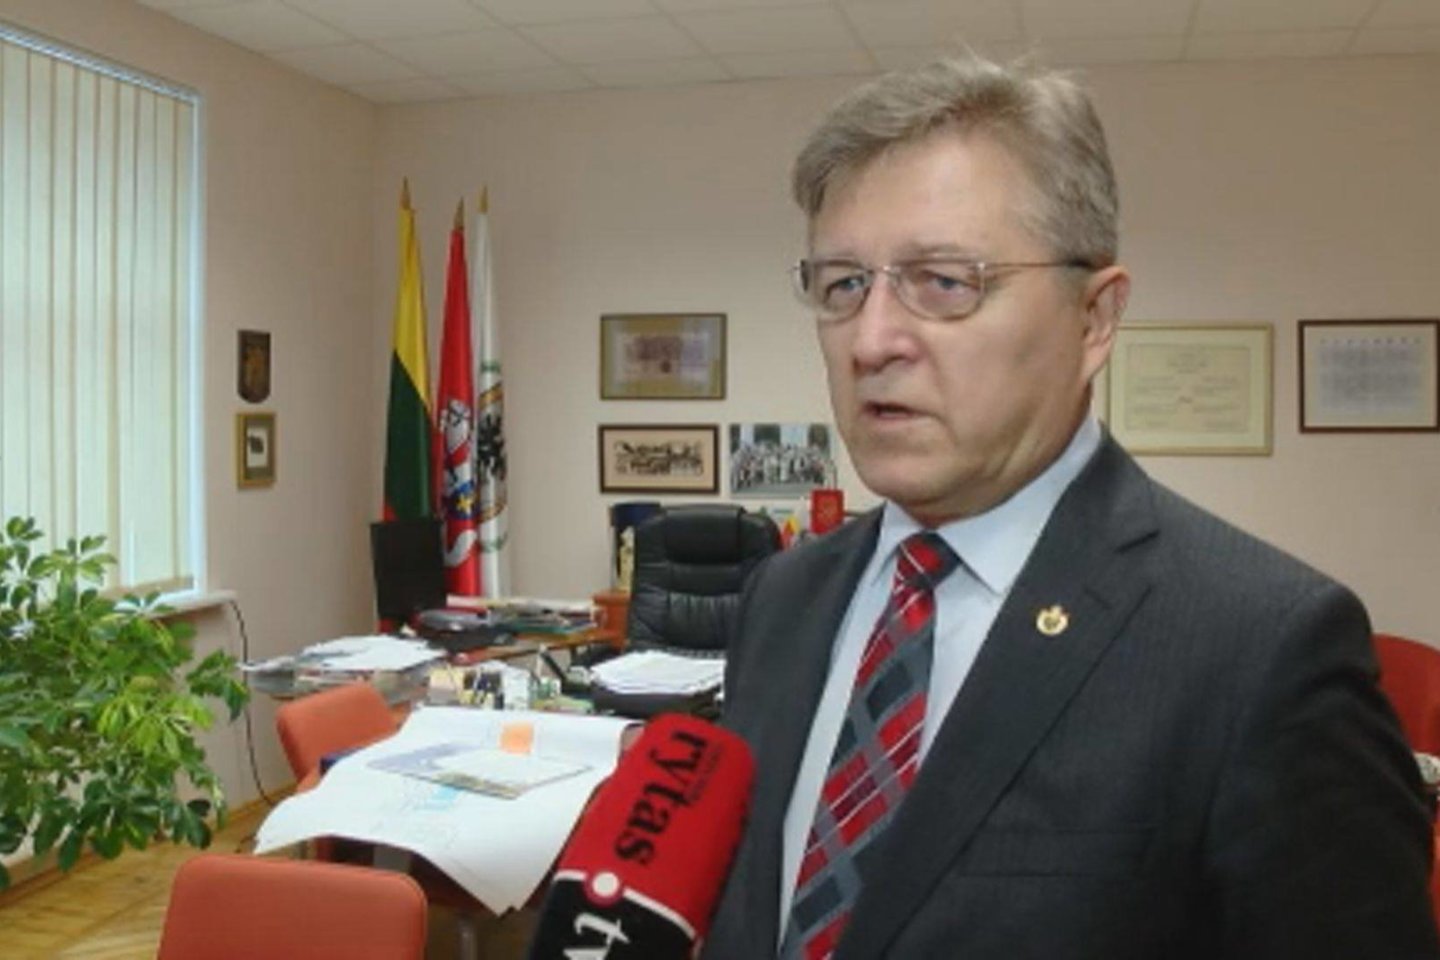  Biržų rajono meras V.Valkiūnas liūdi, kad naujo mero rinkimus laimėjo ne jis. <br> Lrytas.tv nuotr. 